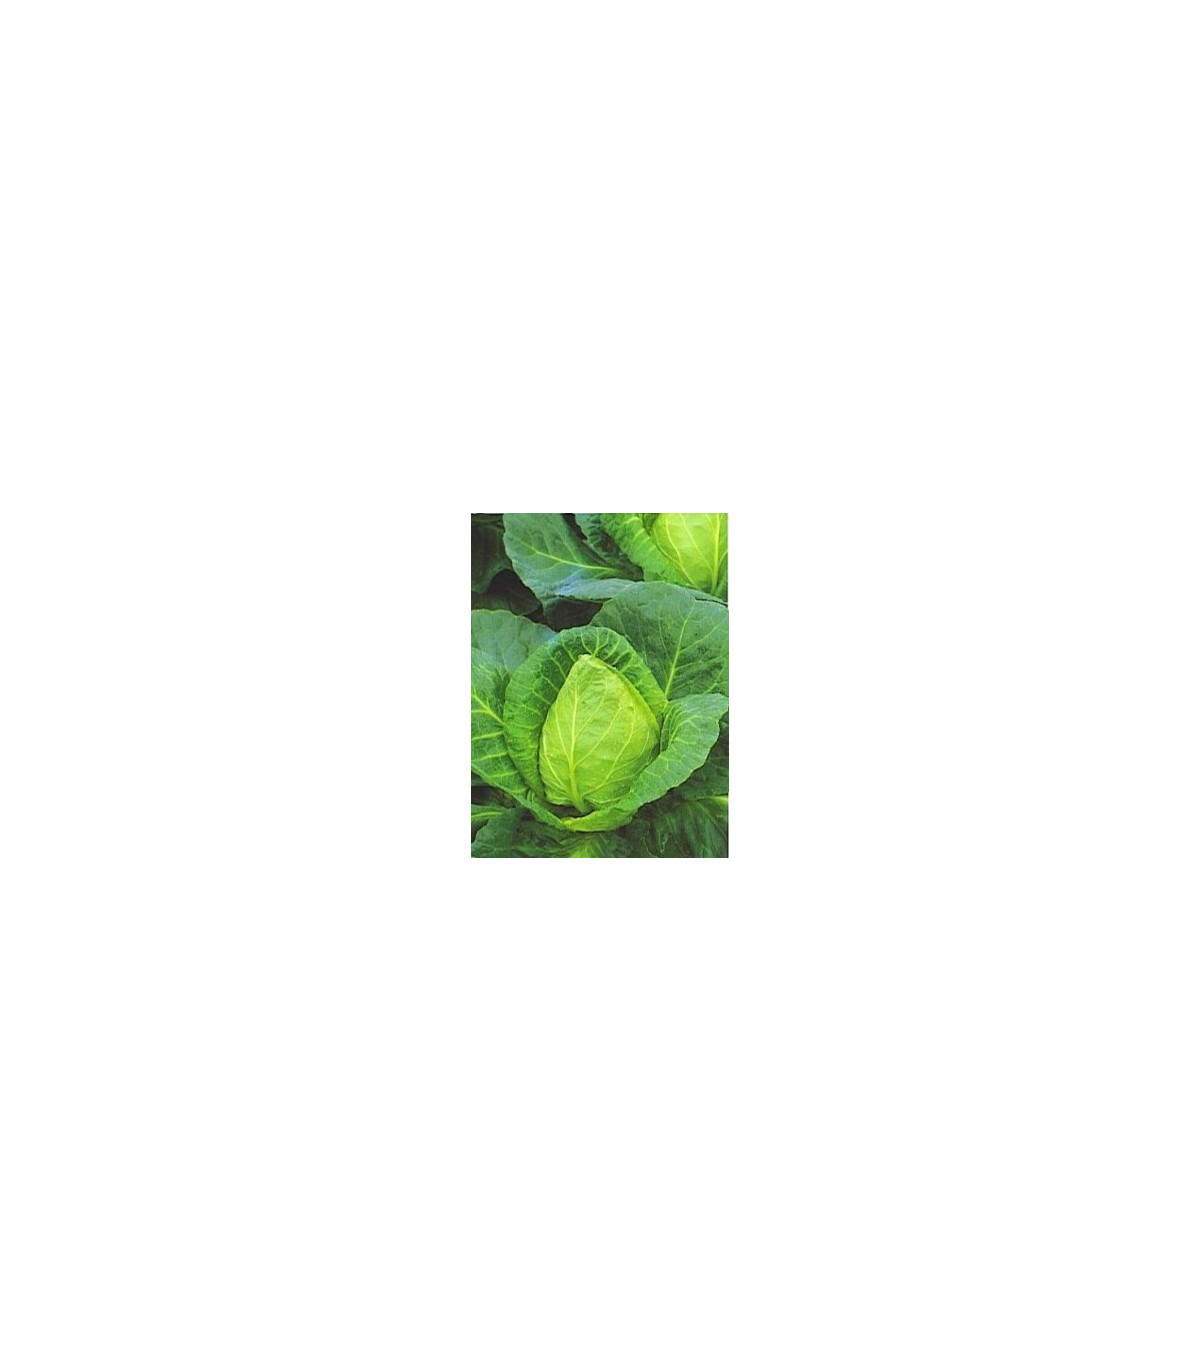 Kapusta biela veľmi skorá - Brassica oleracea - semená kapusty - 0,8 g